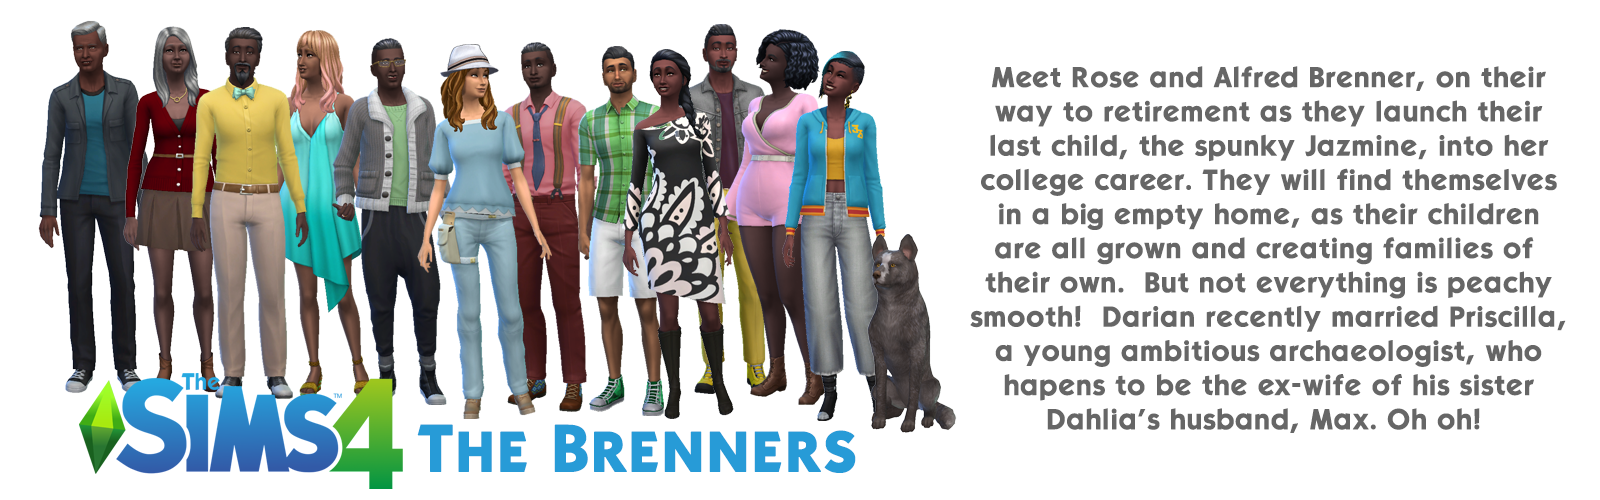 The Brenner Family